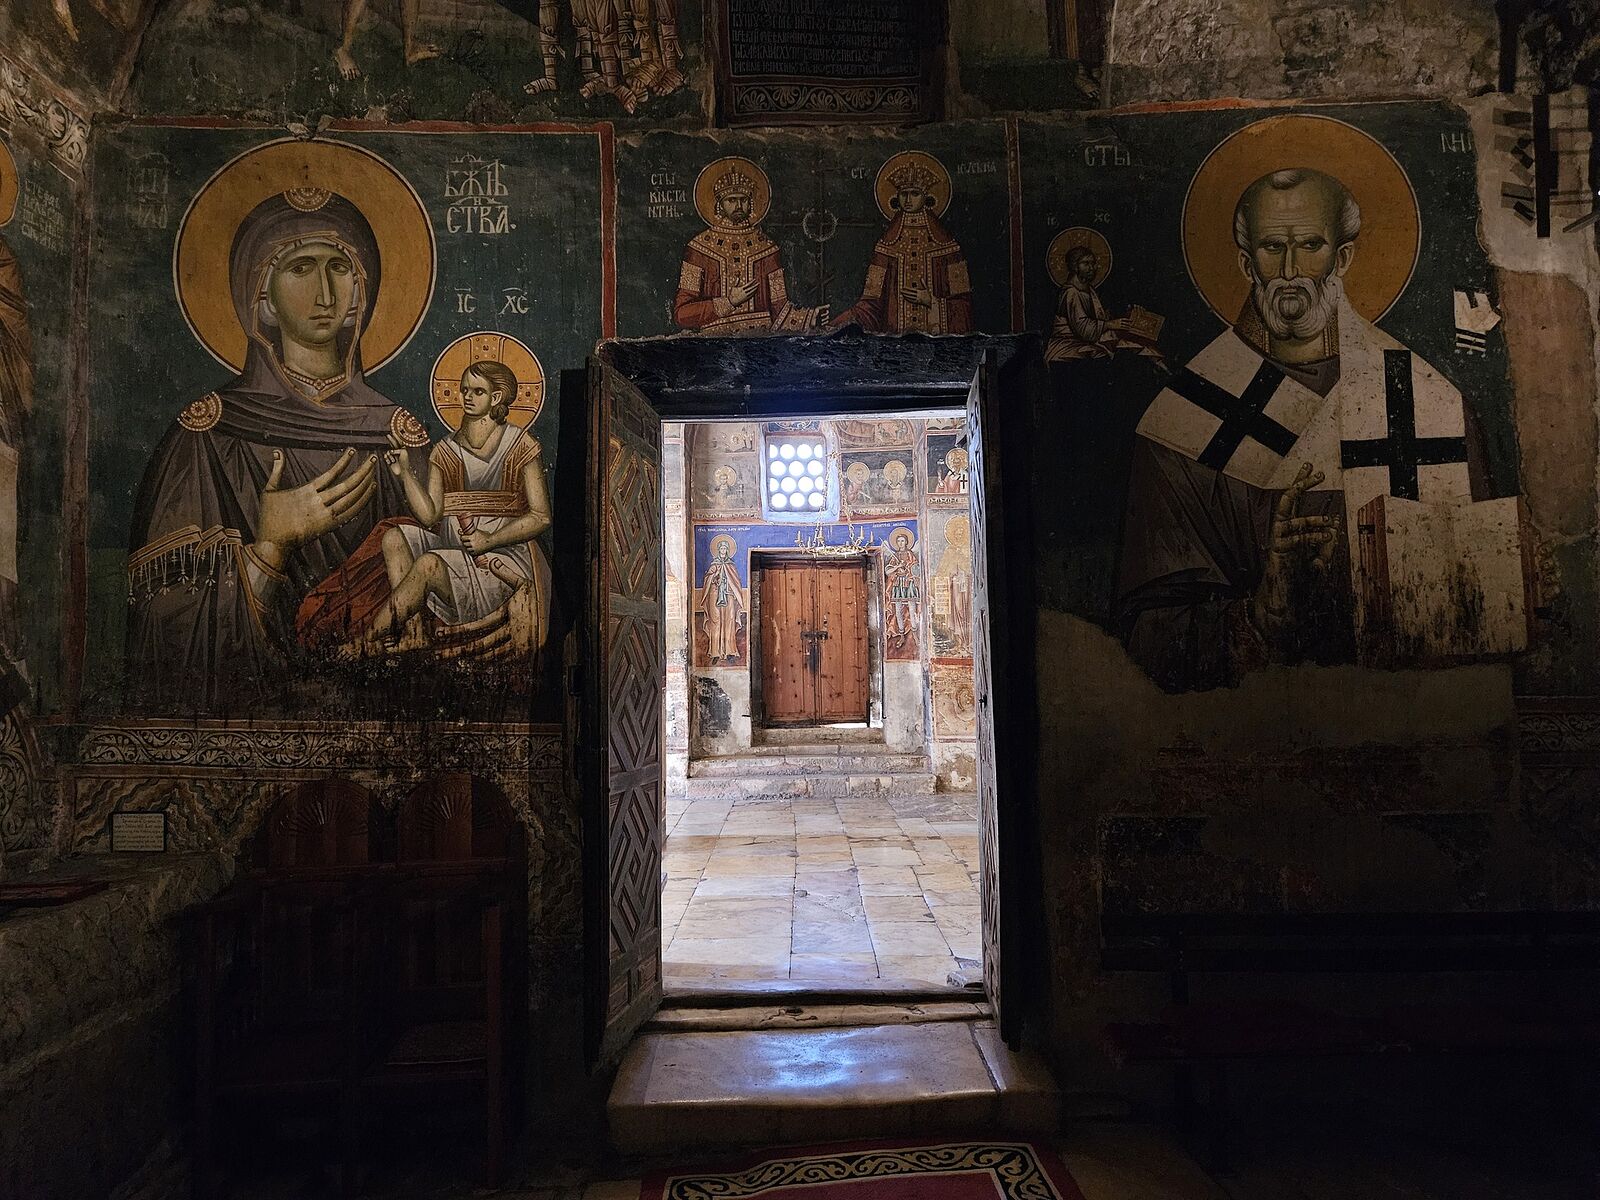 Un groupe de jeunes du Monténégro fait un don de 30 000 dollars aux églises et monastères du Kosovo